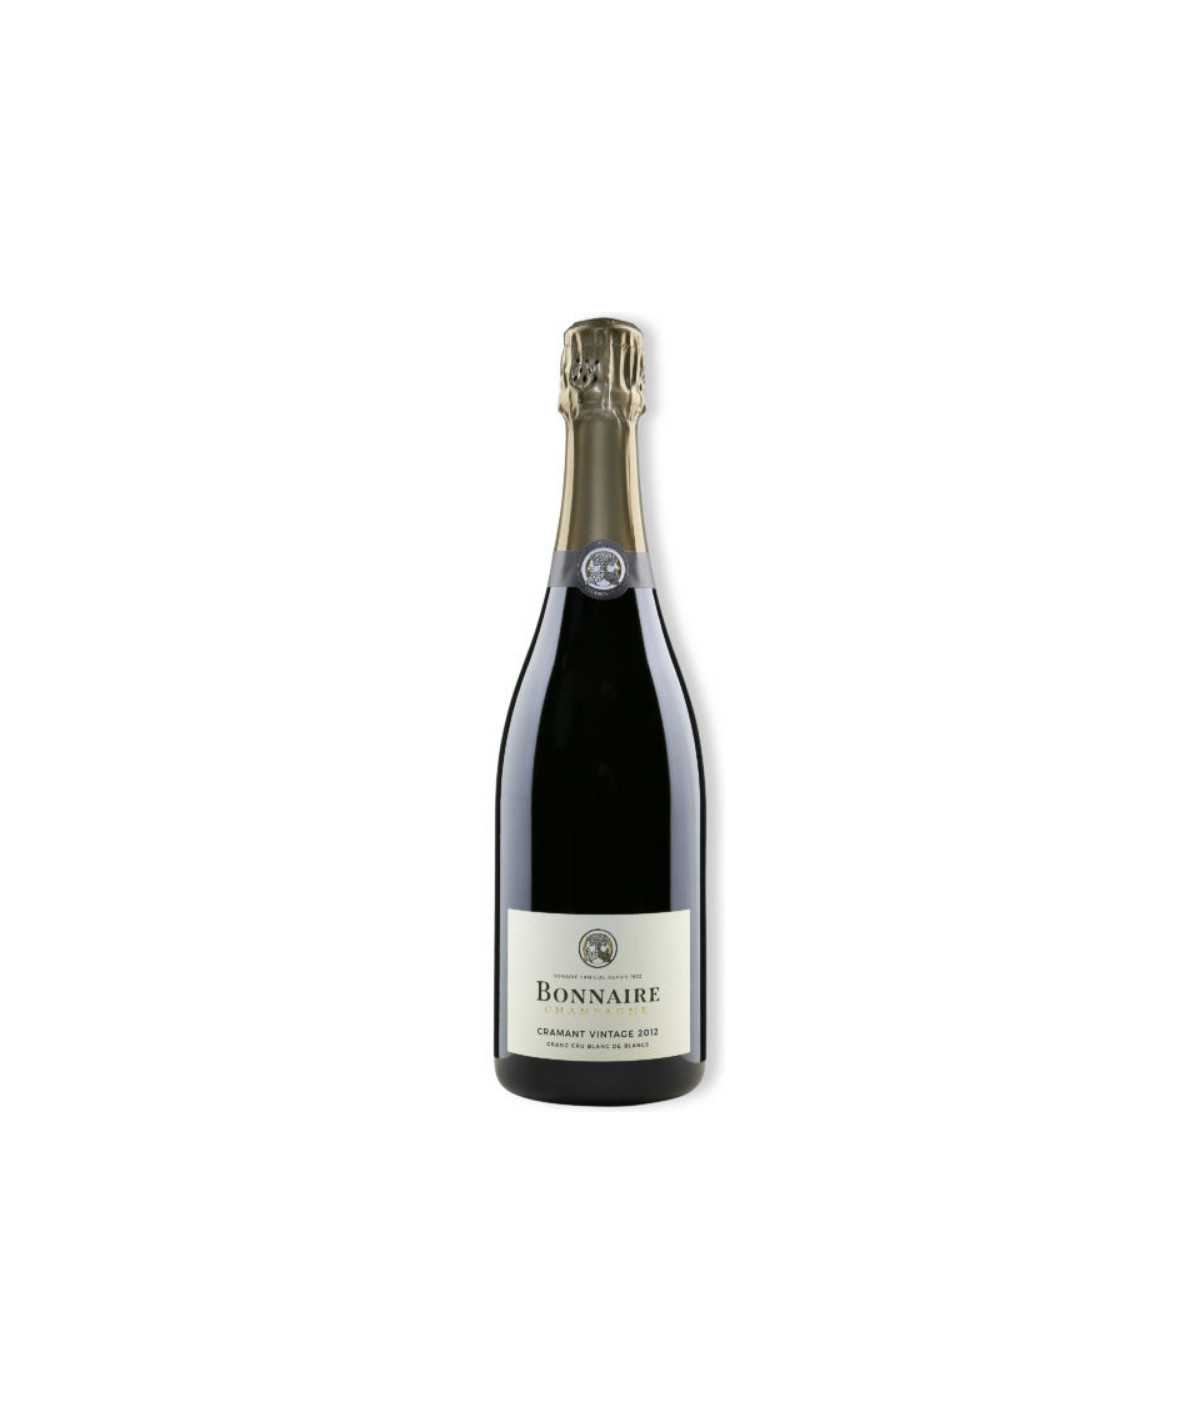 BONNAIRE Champagner Cramant Blanc De Blancs 2013 Jahrgang